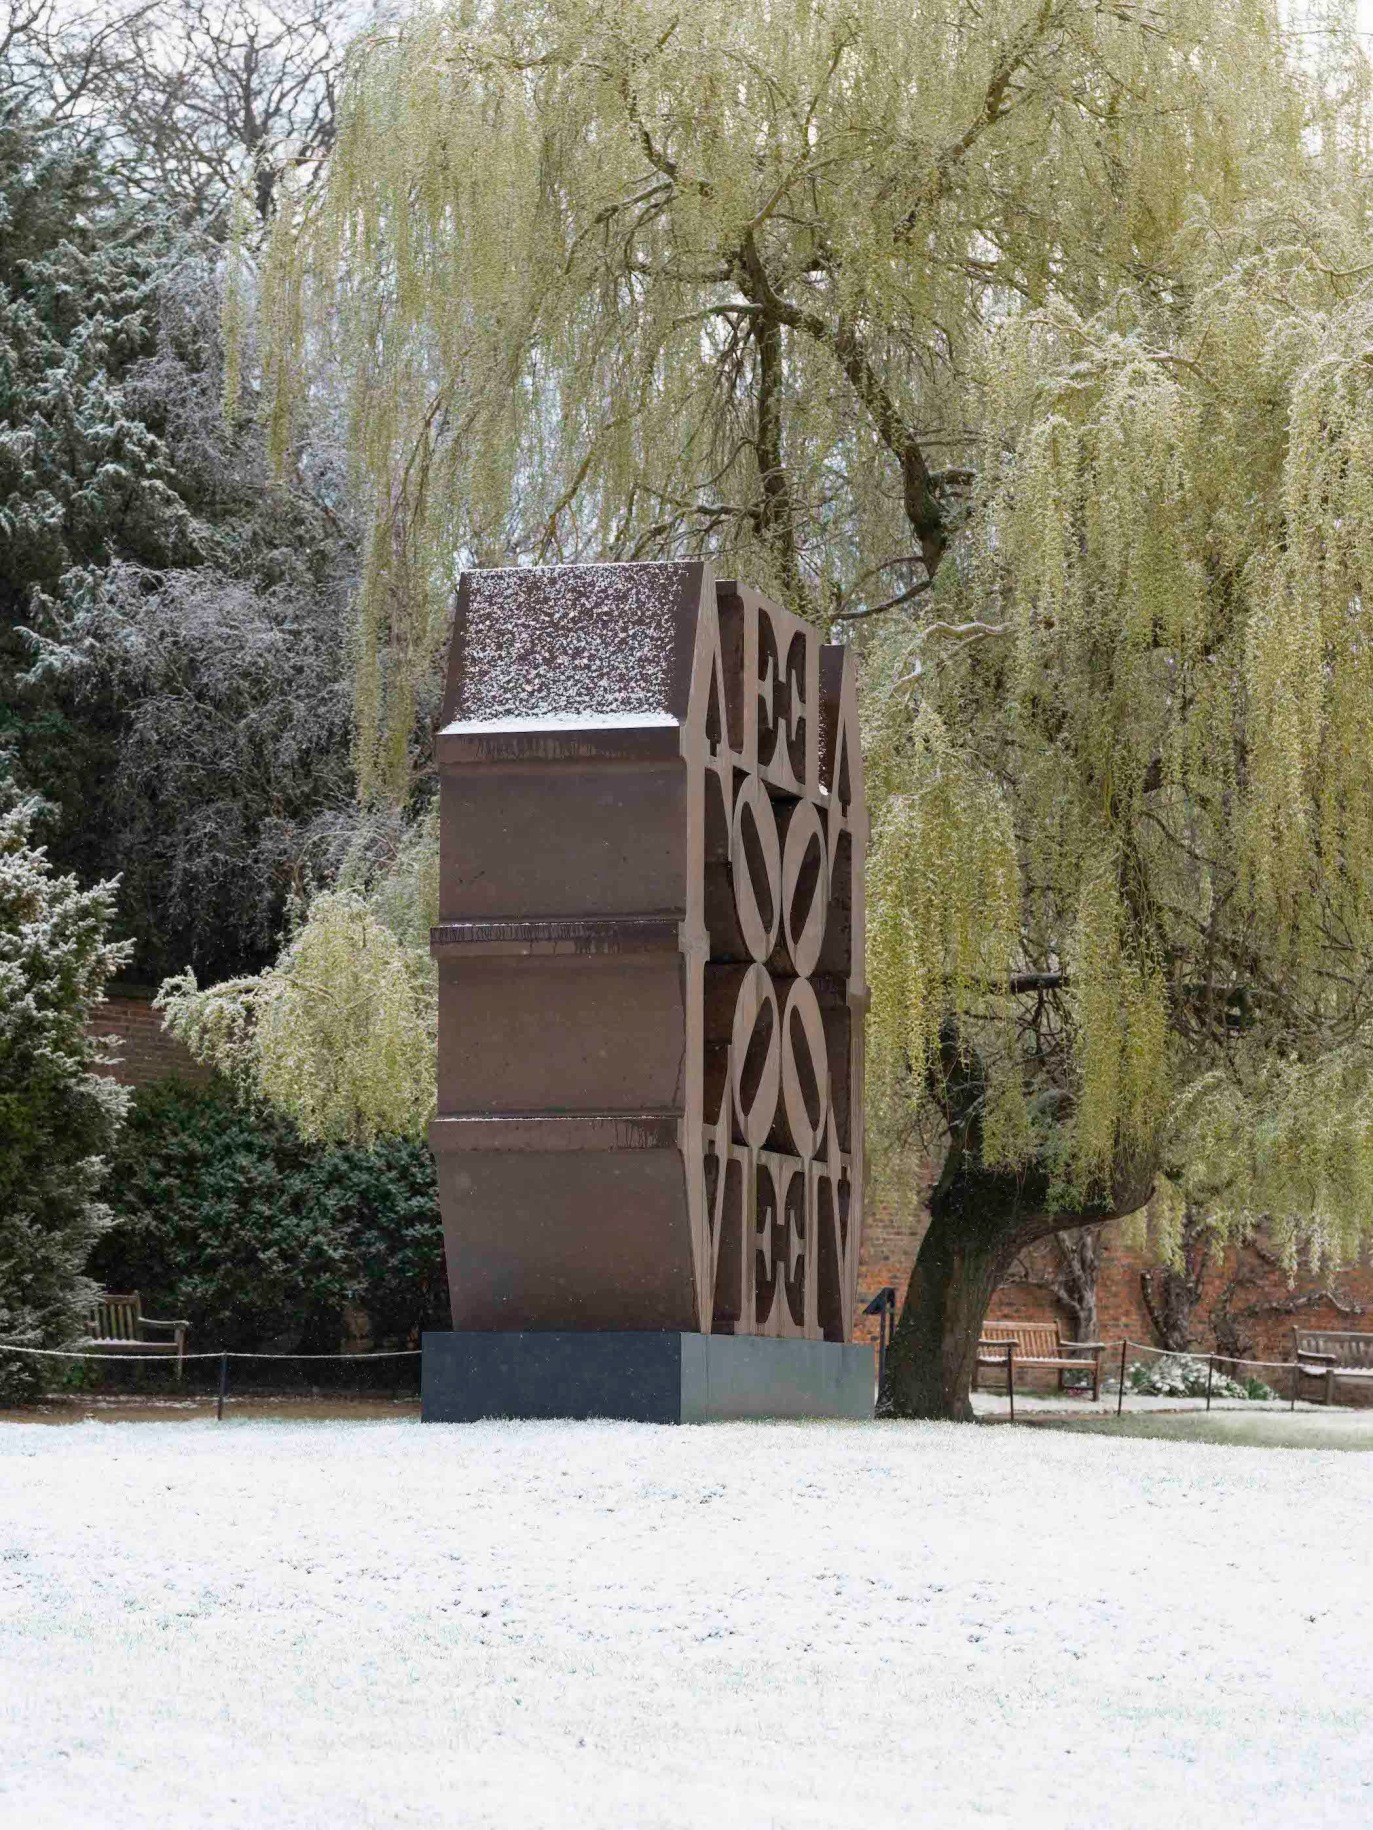 LOVE Wall (1966&ndash;2006), installation view,&nbsp;Robert Indiana: Sculpture 1958-2018, Yorkshire Sculpture Park, March 12, 2022&ndash;January 8, 2023, &nbsp;